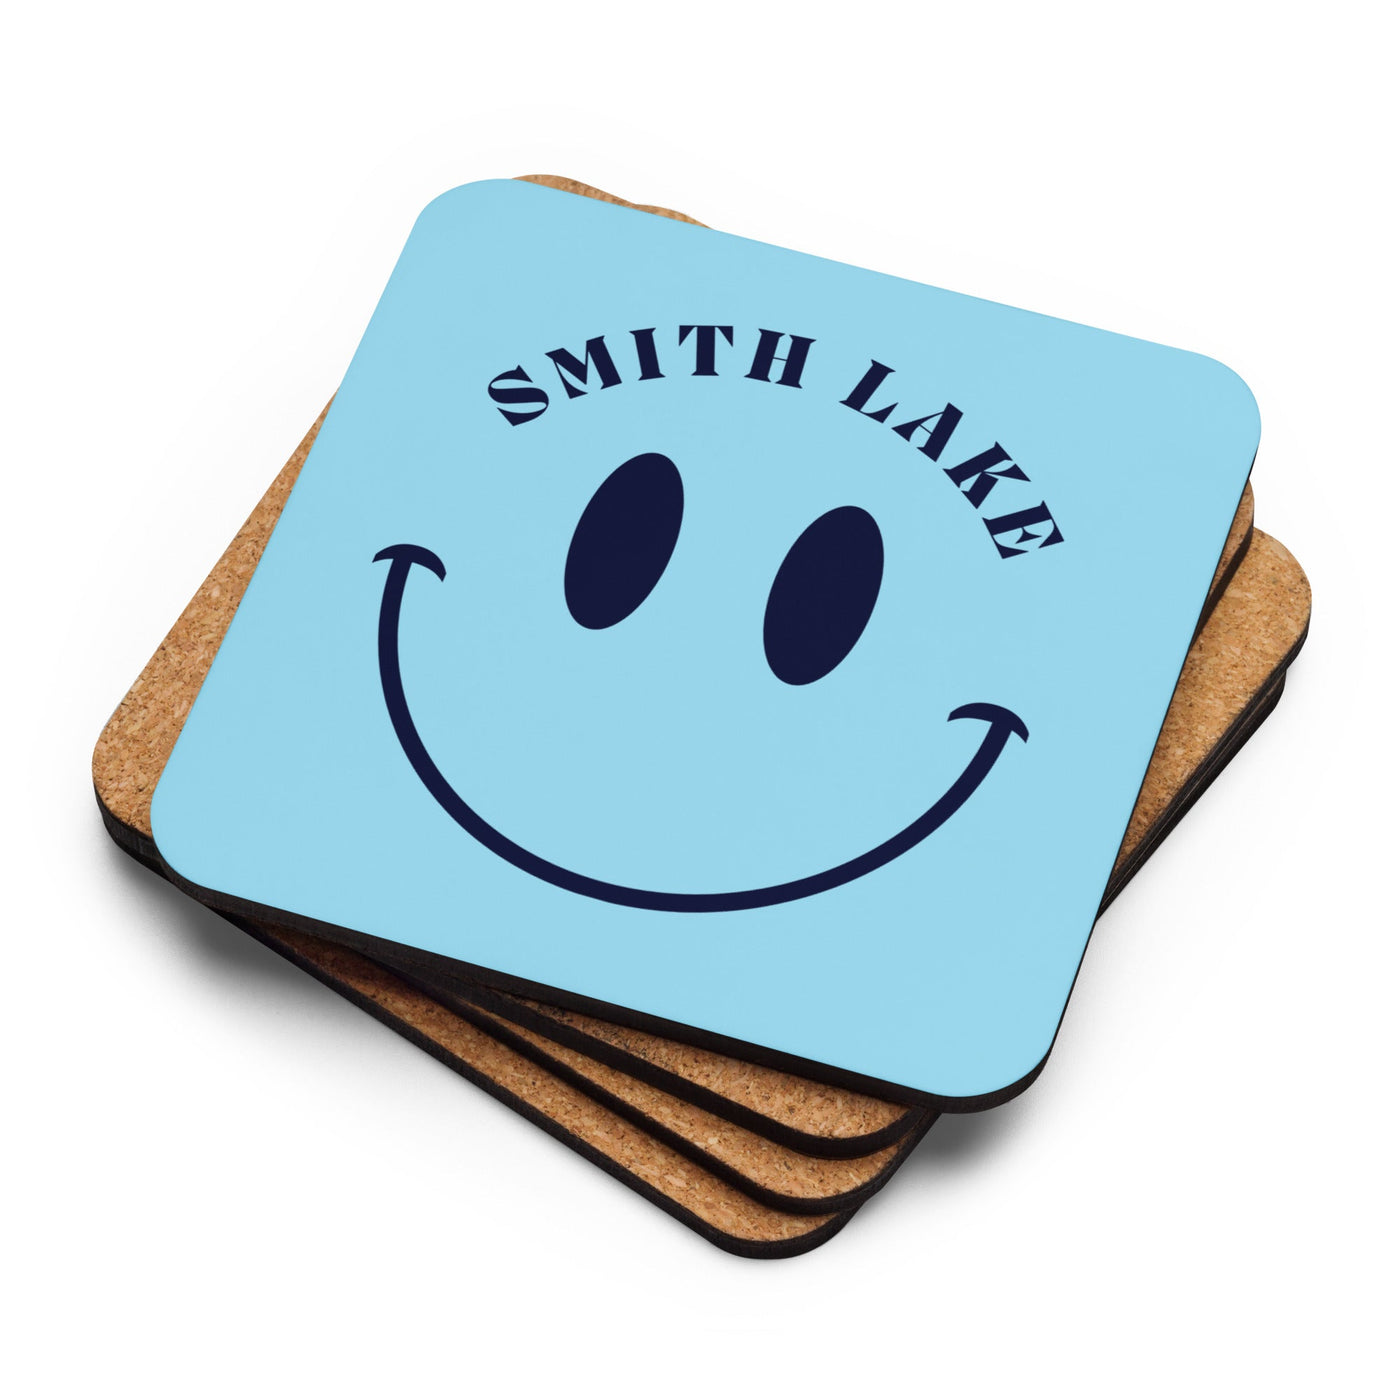 Smith Lake Cork-Back Coaster - Ezra's Clothing